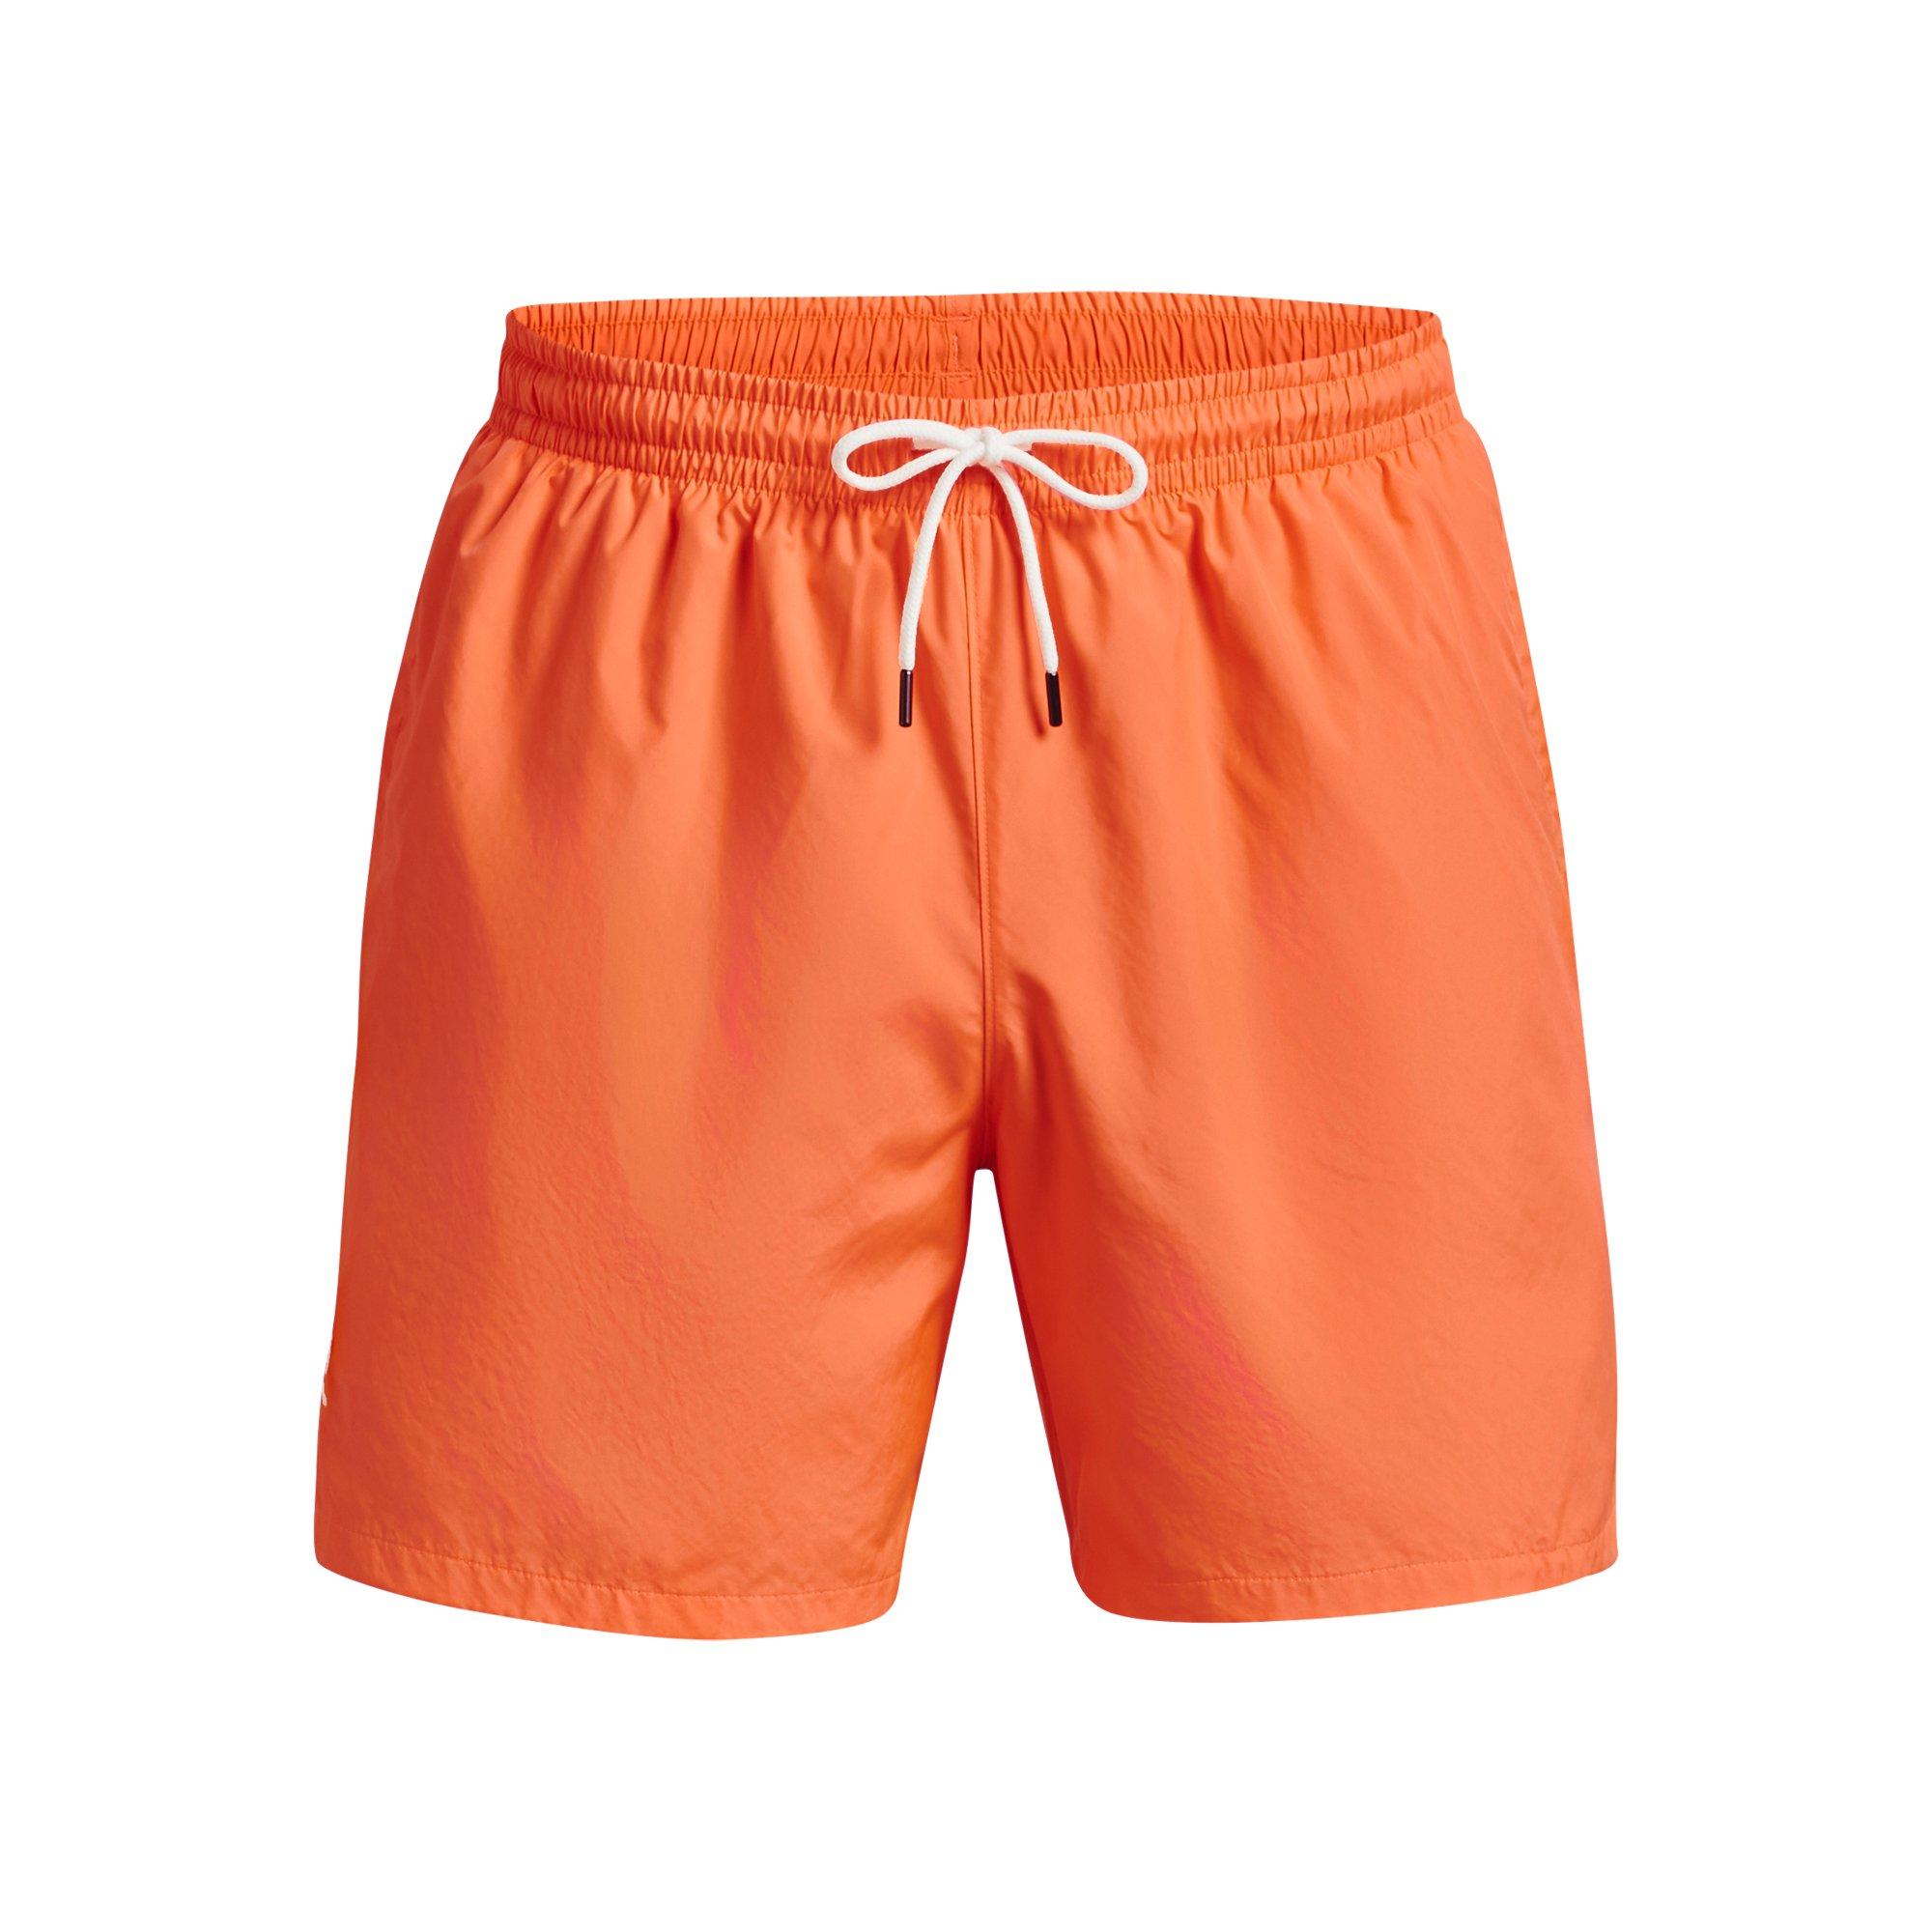 Under Armour Men's Woven Volley Shorts - Orange - Hibbett